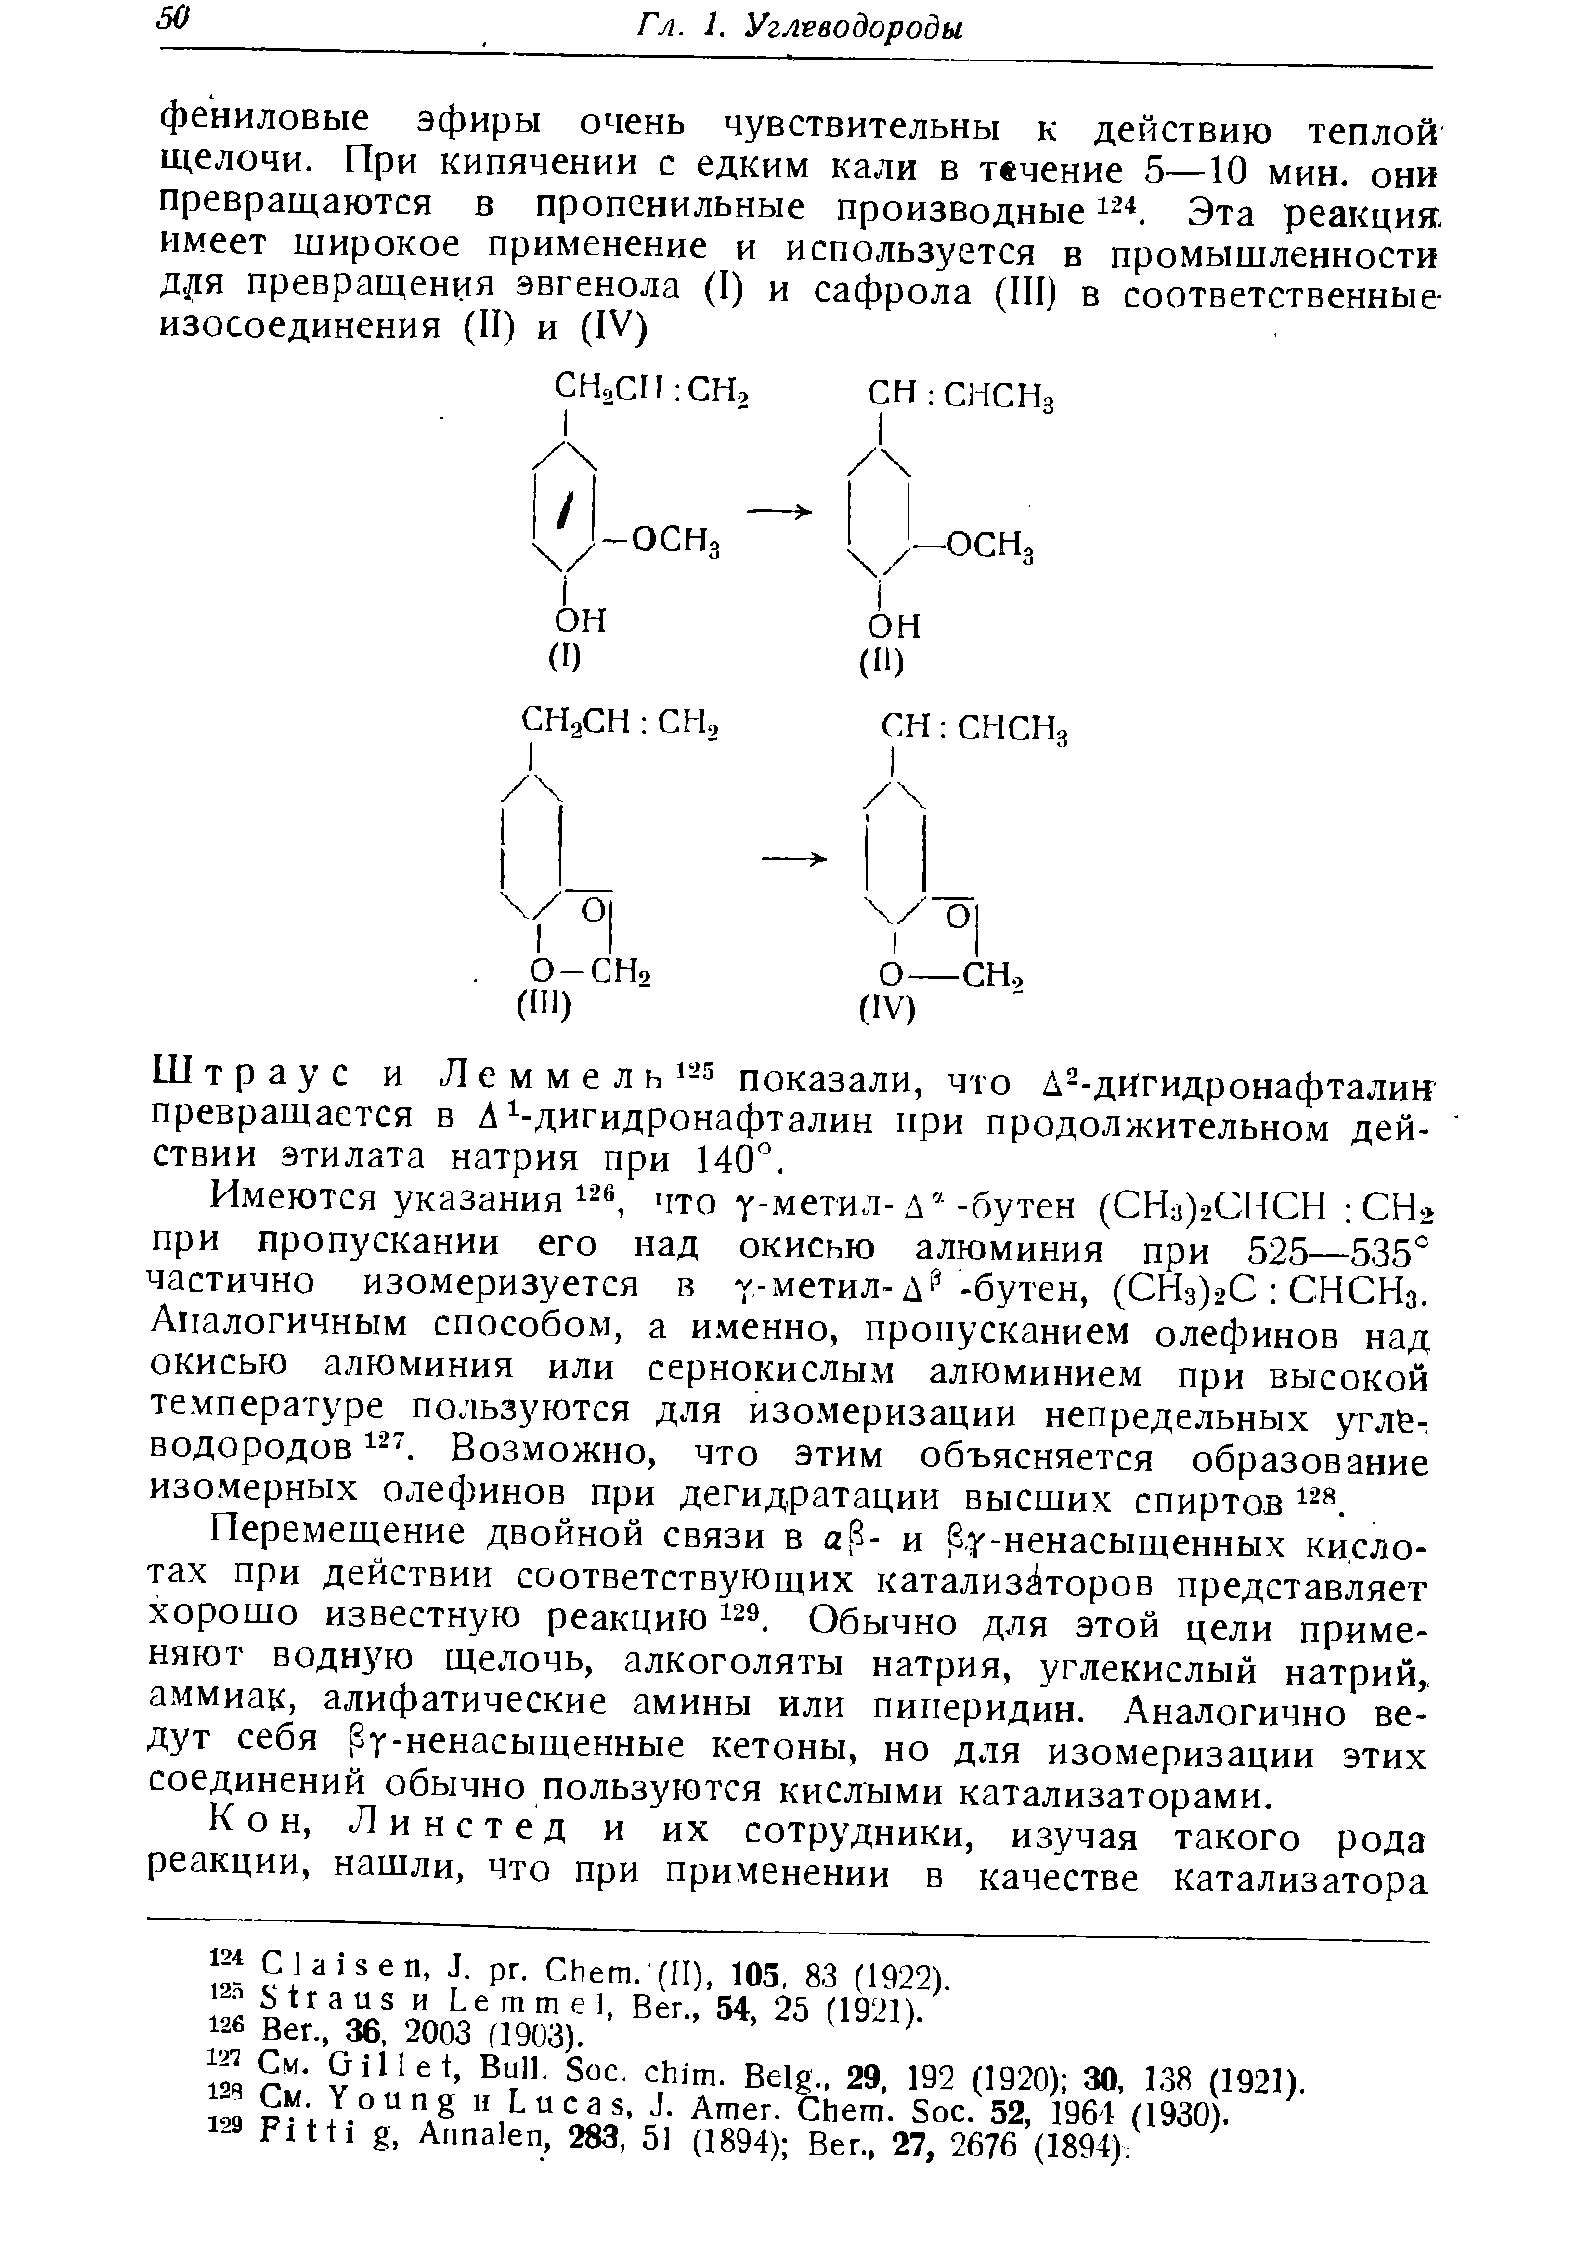 Штраус и Леммель -5 показали, что Д -дИгидронафталин превращается в Л дигидронафталин нри продолжительном действии этилата натрия при 140°.